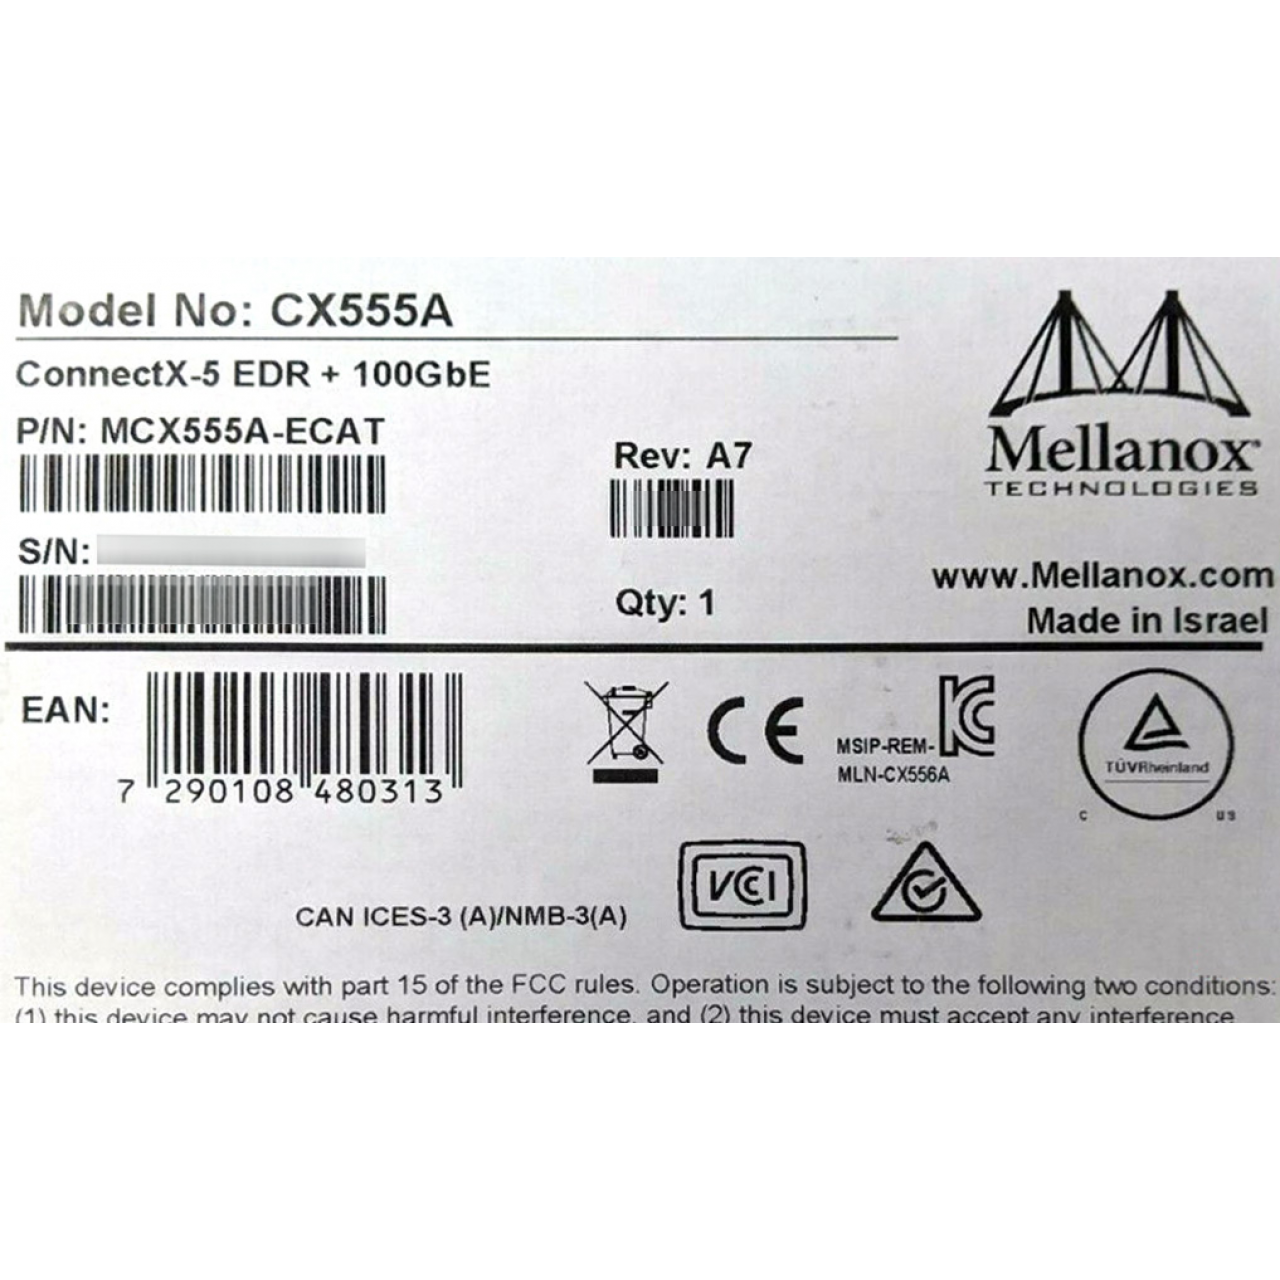 MCX555A-ECAT NVIDIA Mellanox ECAT ConnectX-5 VPI EDR/100GbE